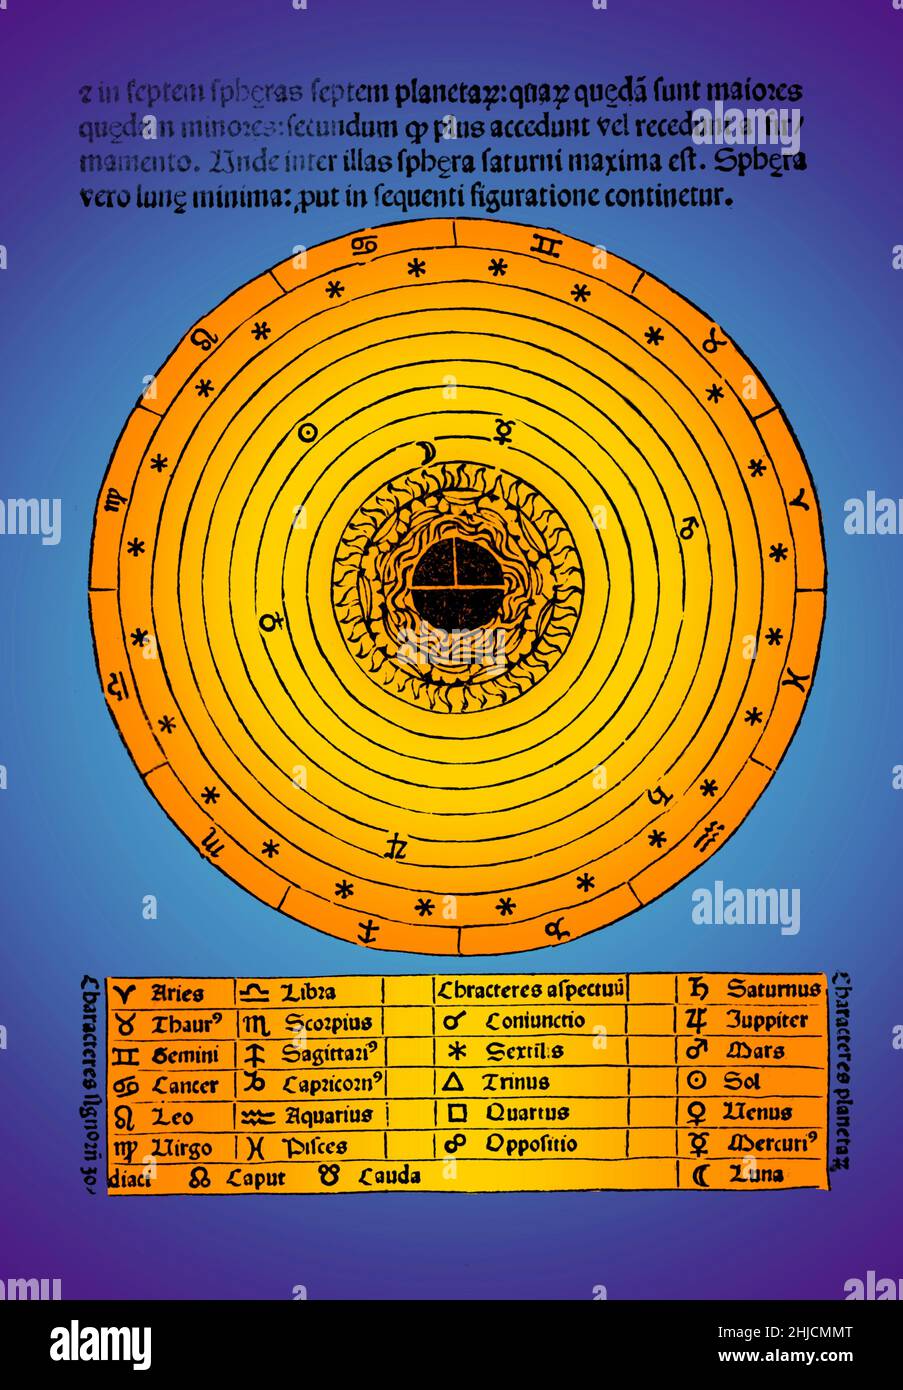 Kolorierte schematische Darstellung des Kosmos aus 'De sphaera mundi', einer mittelalterlichen Einführung in die grundlegenden Elemente der Astronomie, geschrieben von Johannes de Sacrobosco, um 1230. Sieben konzentrische Kreise stellen die Umlaufbahnen des Mondes, der Planeten und der Sonne dar. Stockfoto